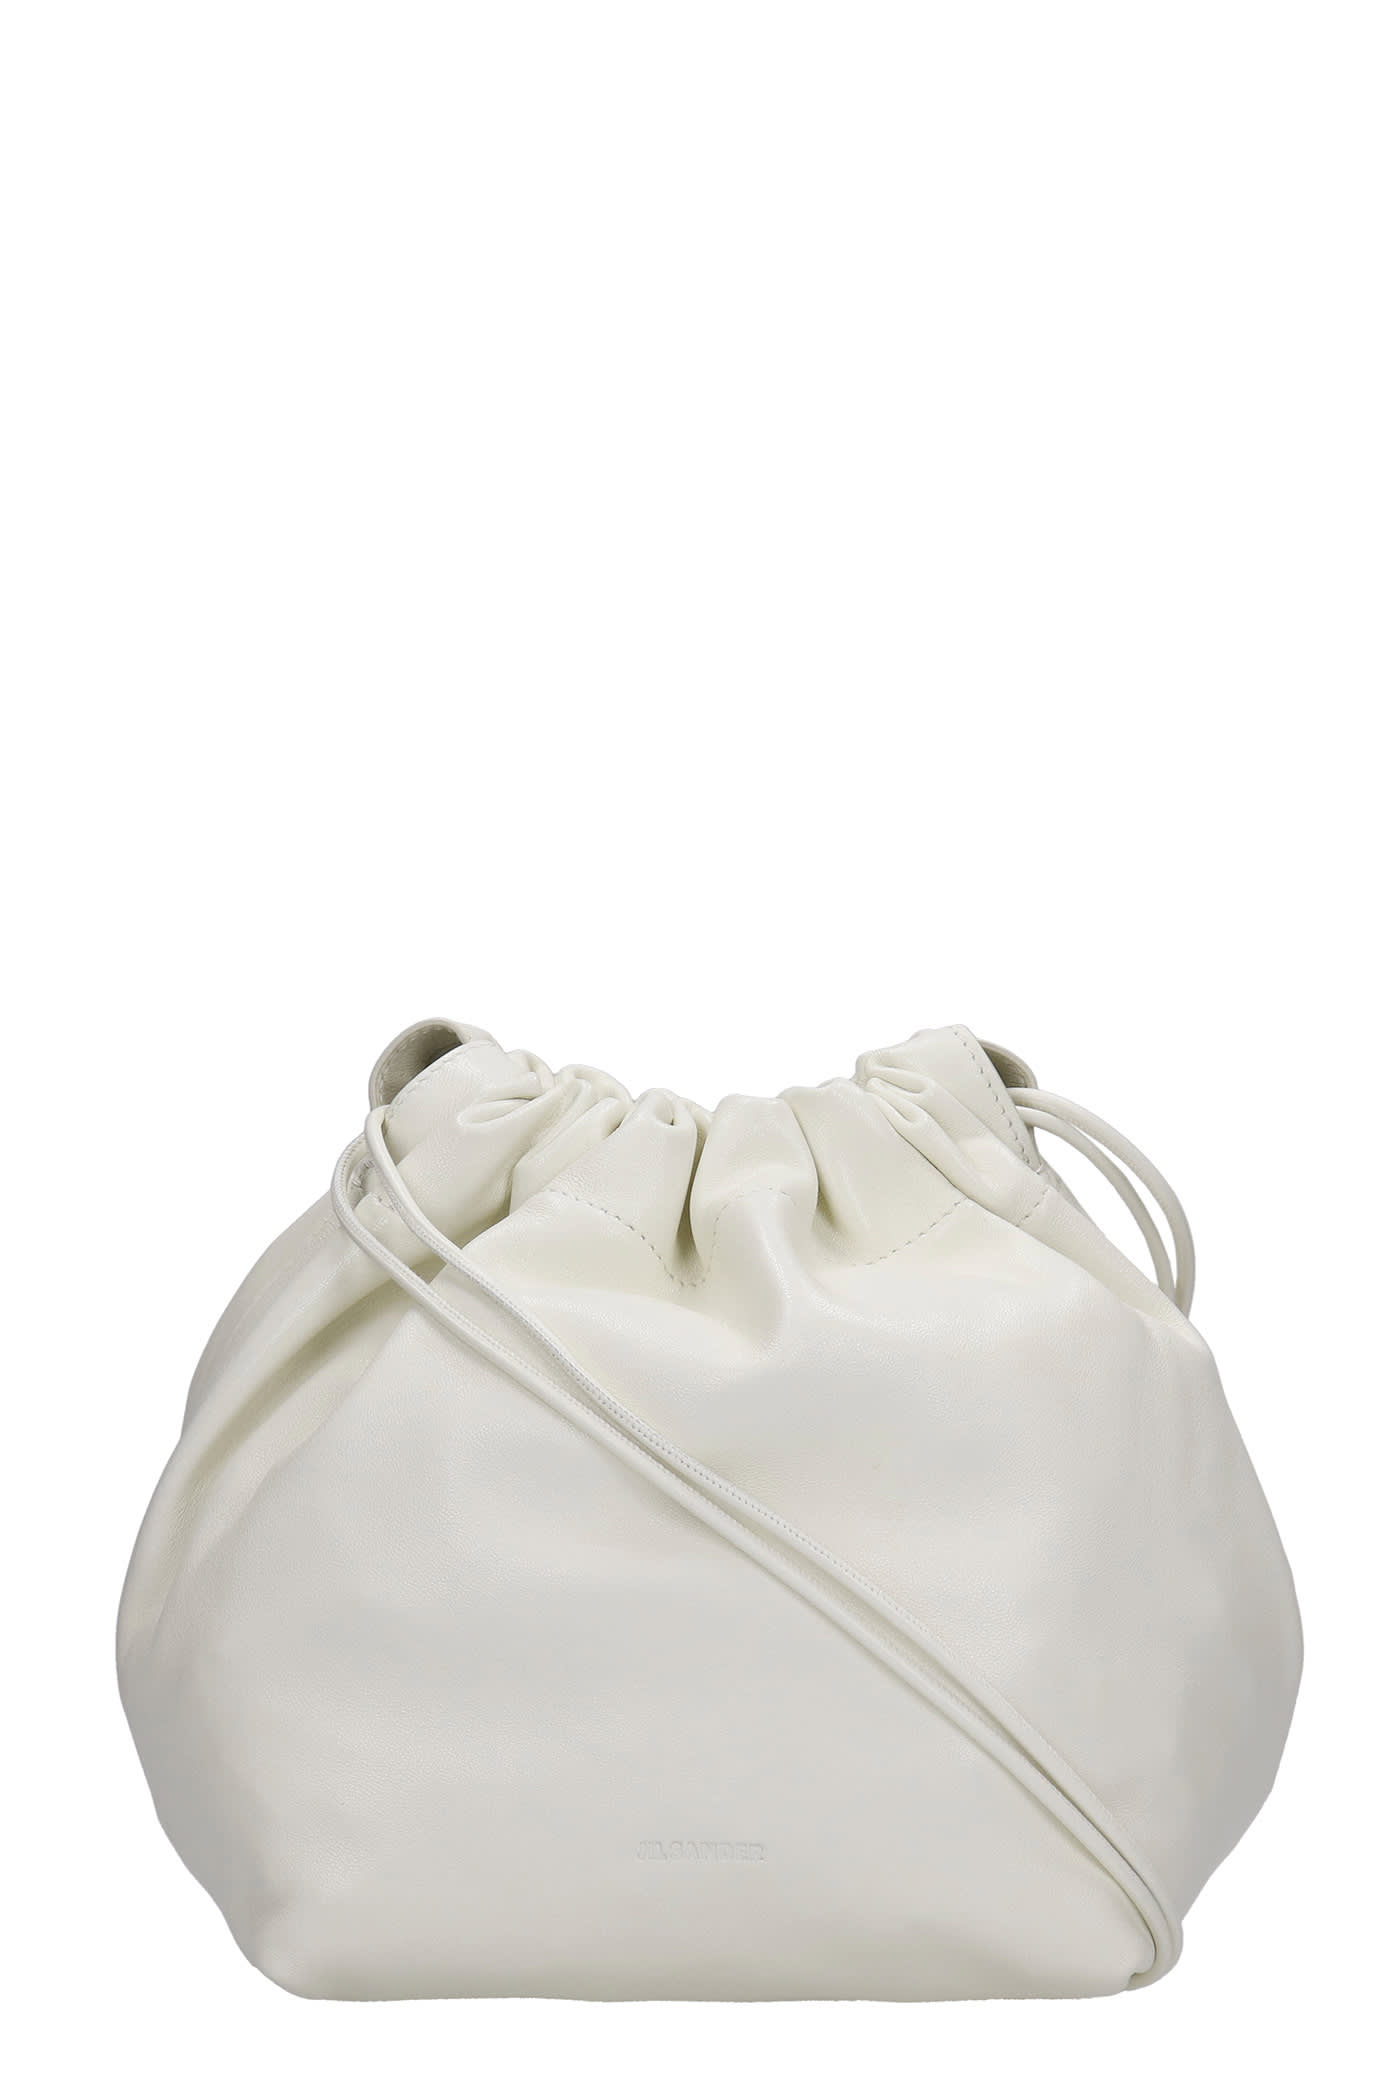 Jil Sander Shoulder Bag In White Leather